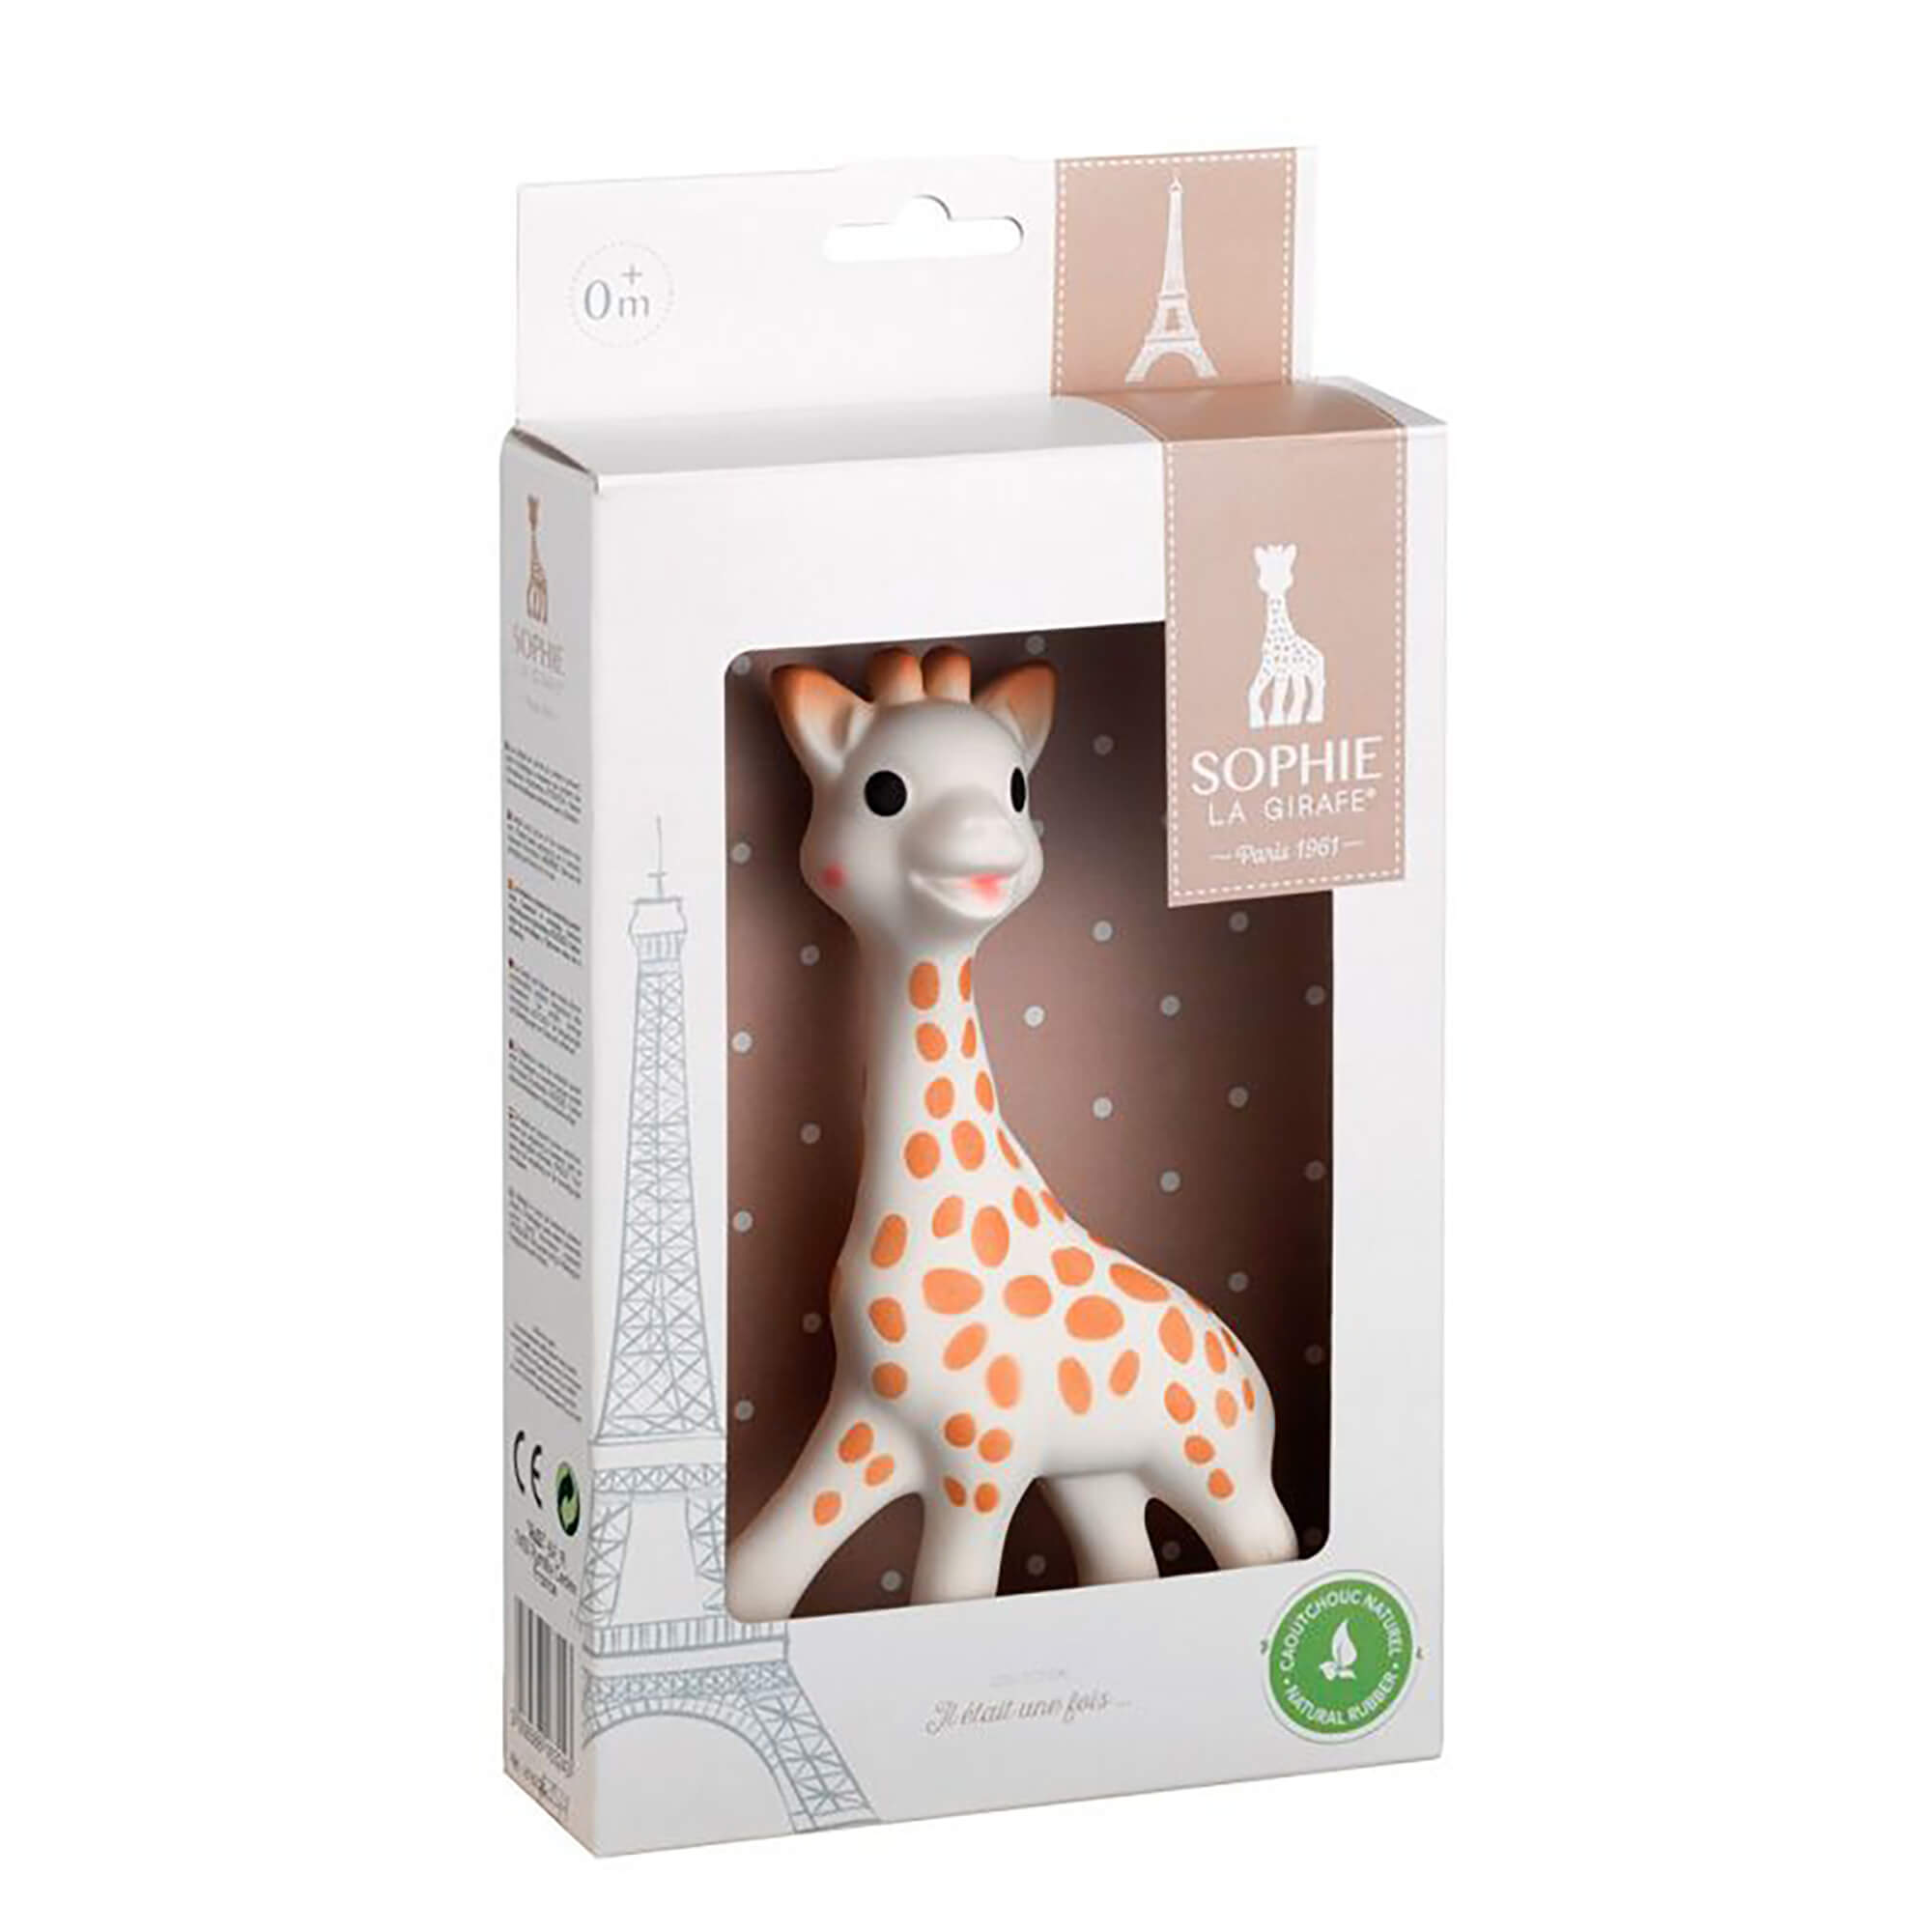 Sophie-la-giraffe-weisser-Geschenkkarton-1